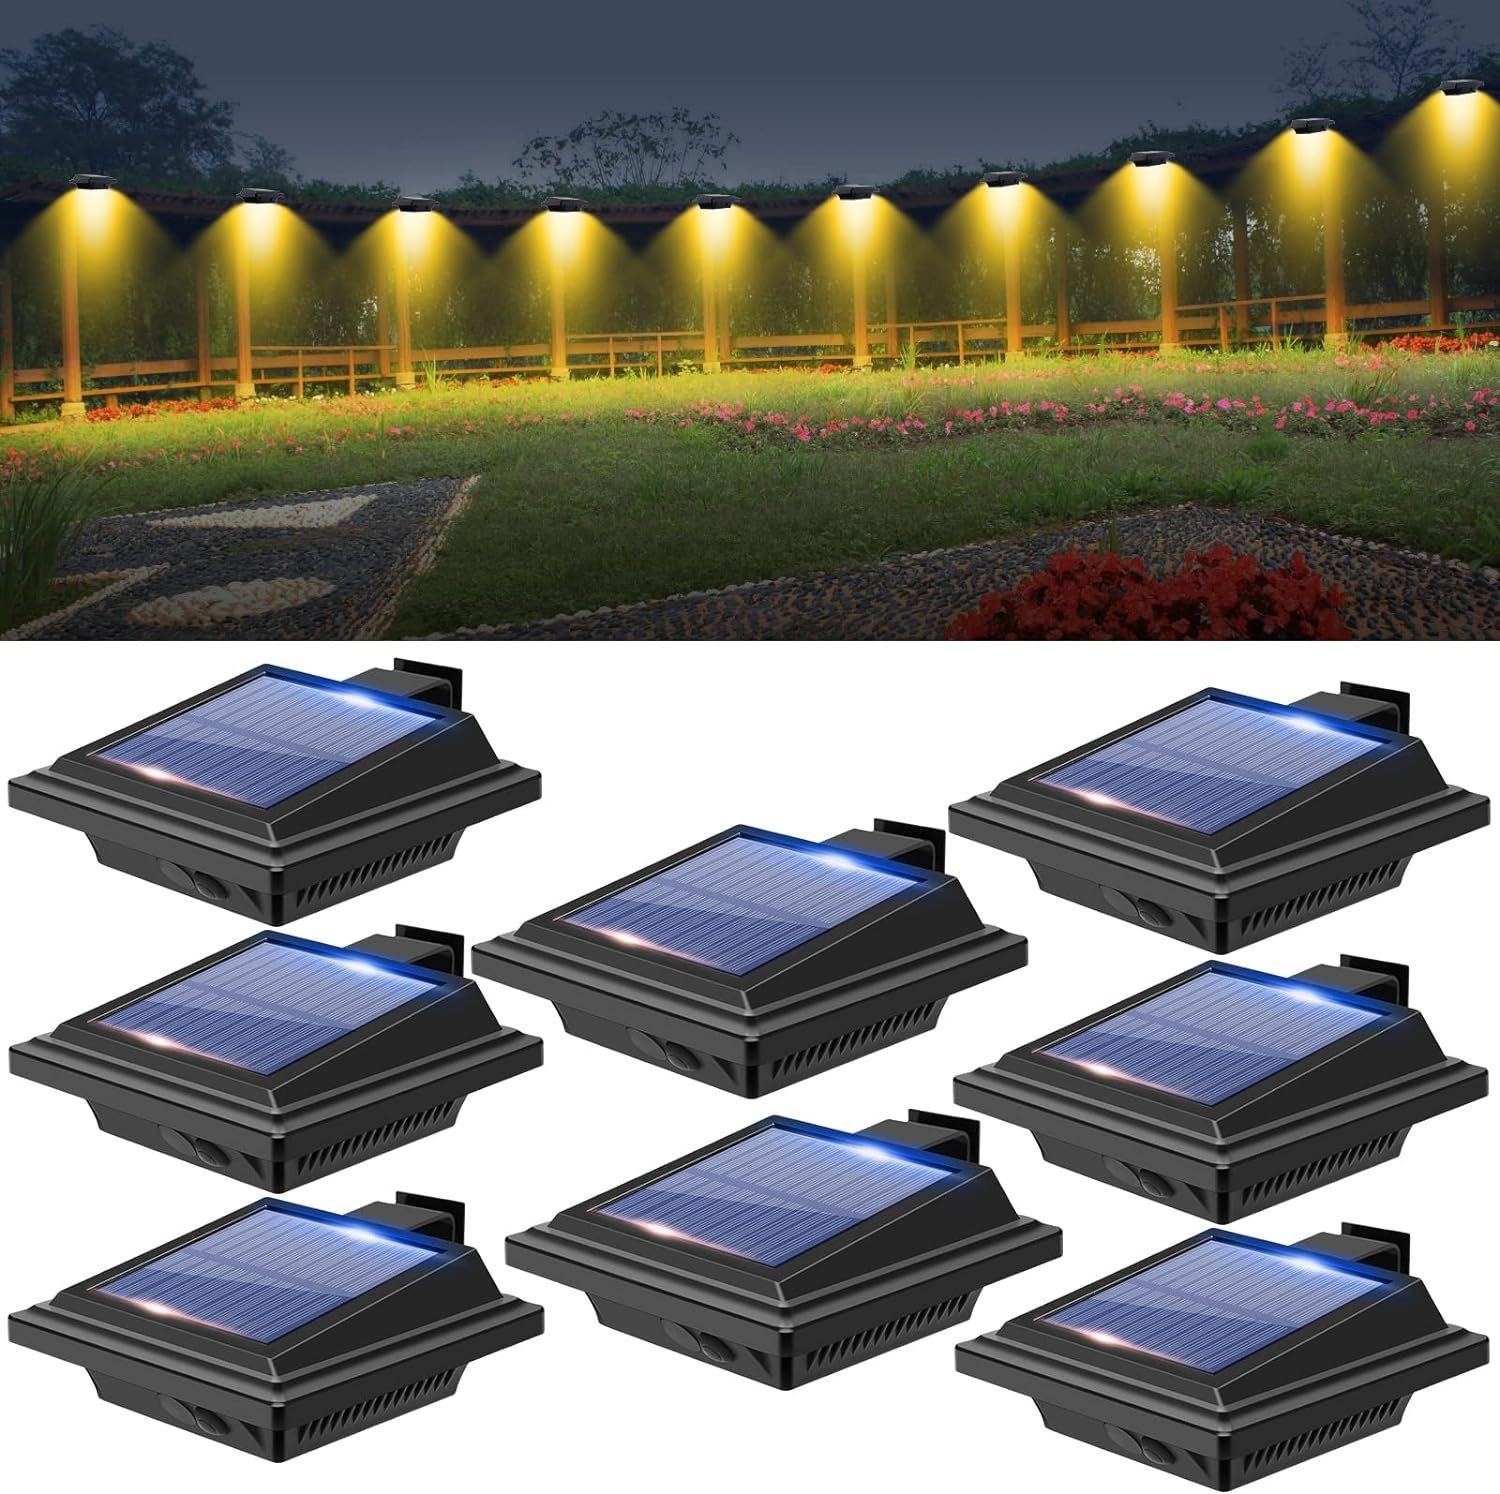 KEENZO Dachrinnenleuchte 8Stk.40LEDs Solarlampen für Außen dachrinnen solarleuchten